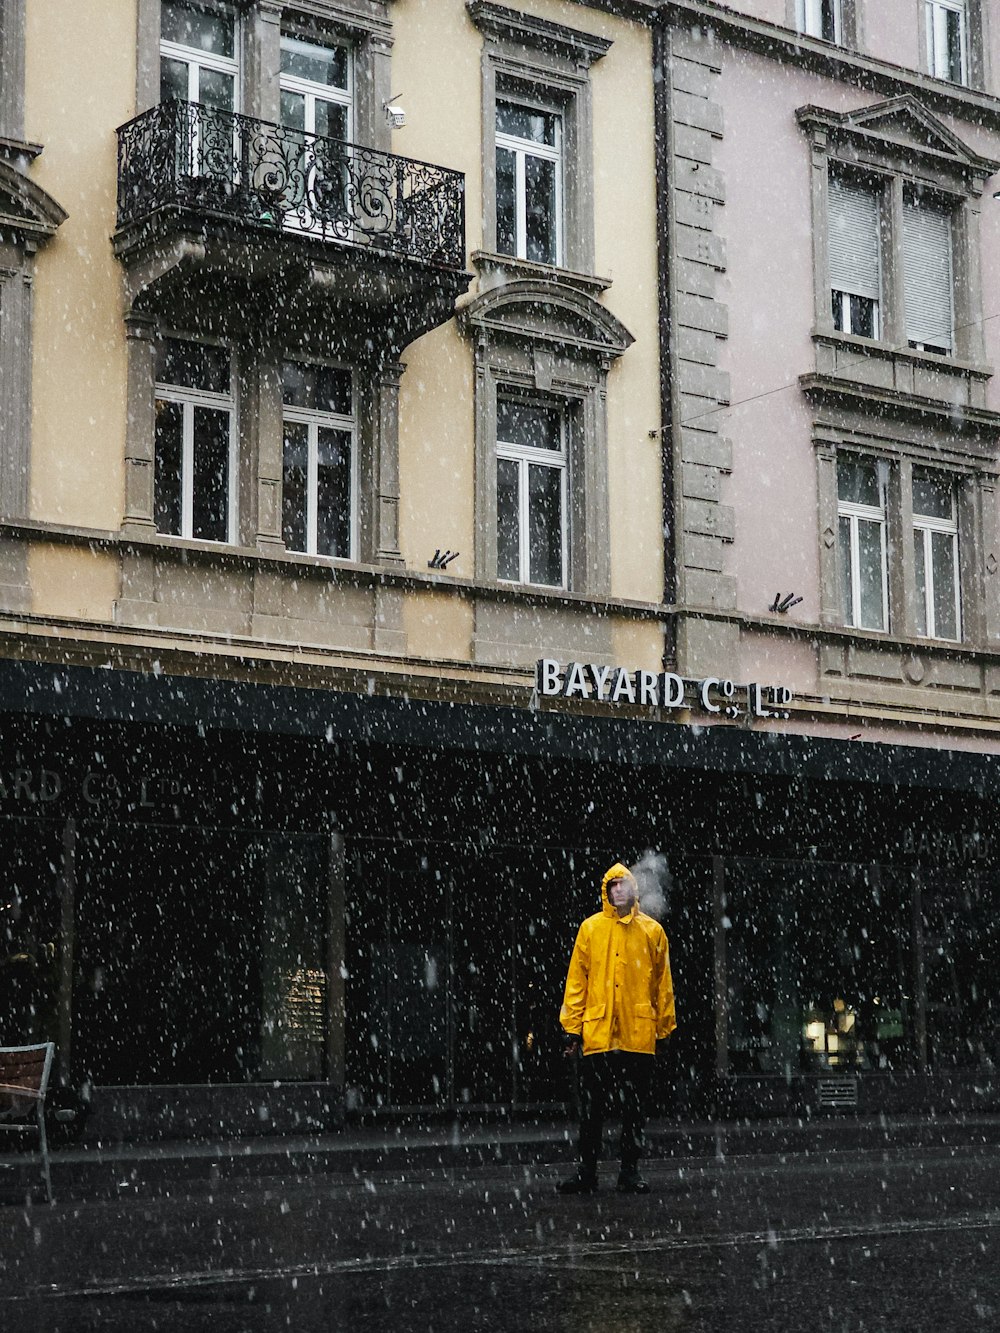 eine Person in einem gelben Regenmantel steht vor einem Gebäude